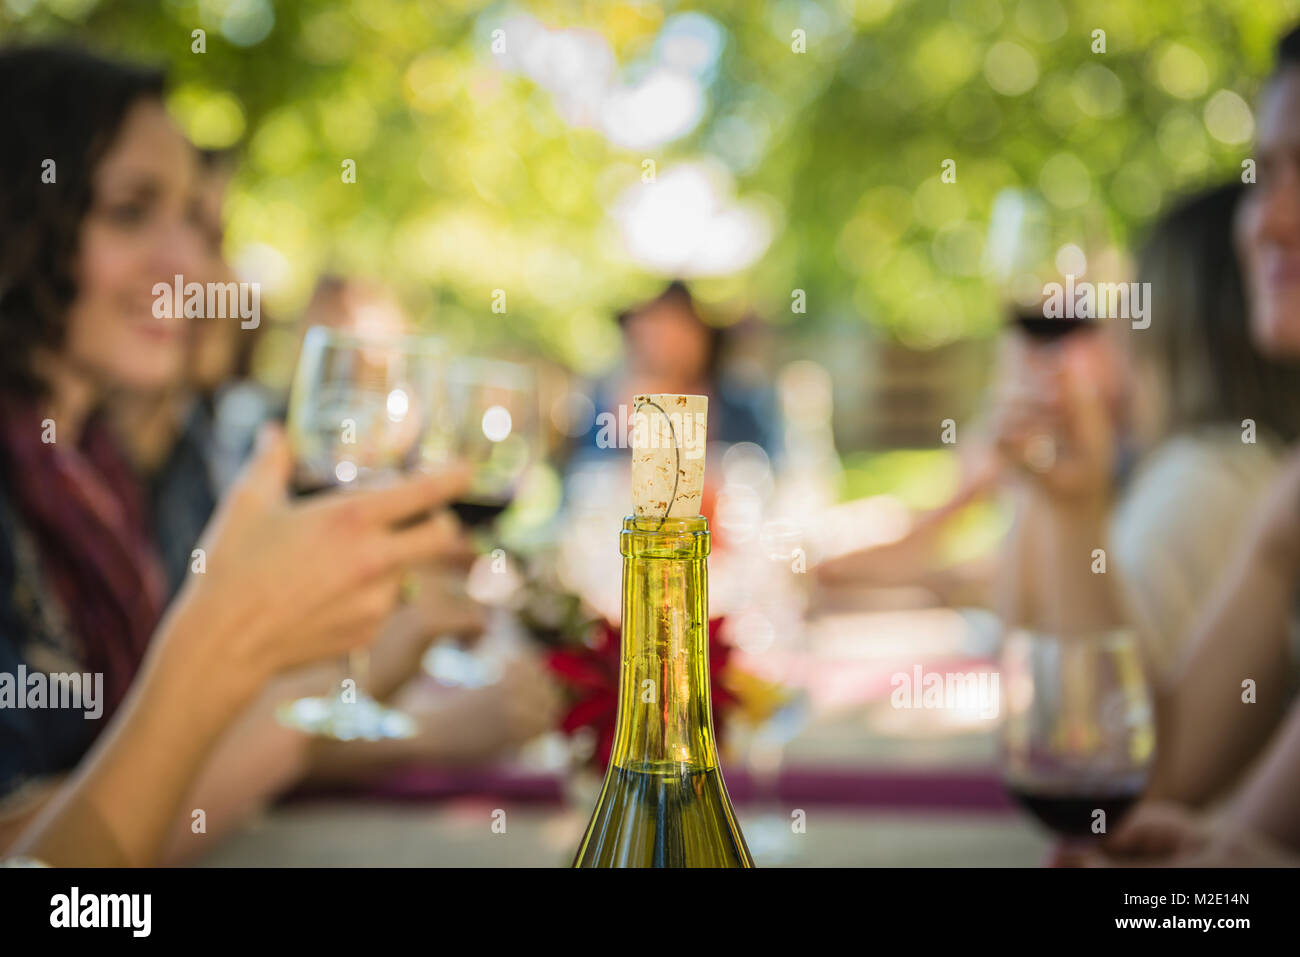 El corcho de una botella de vino cerca de gente bebiendo vino Foto de stock